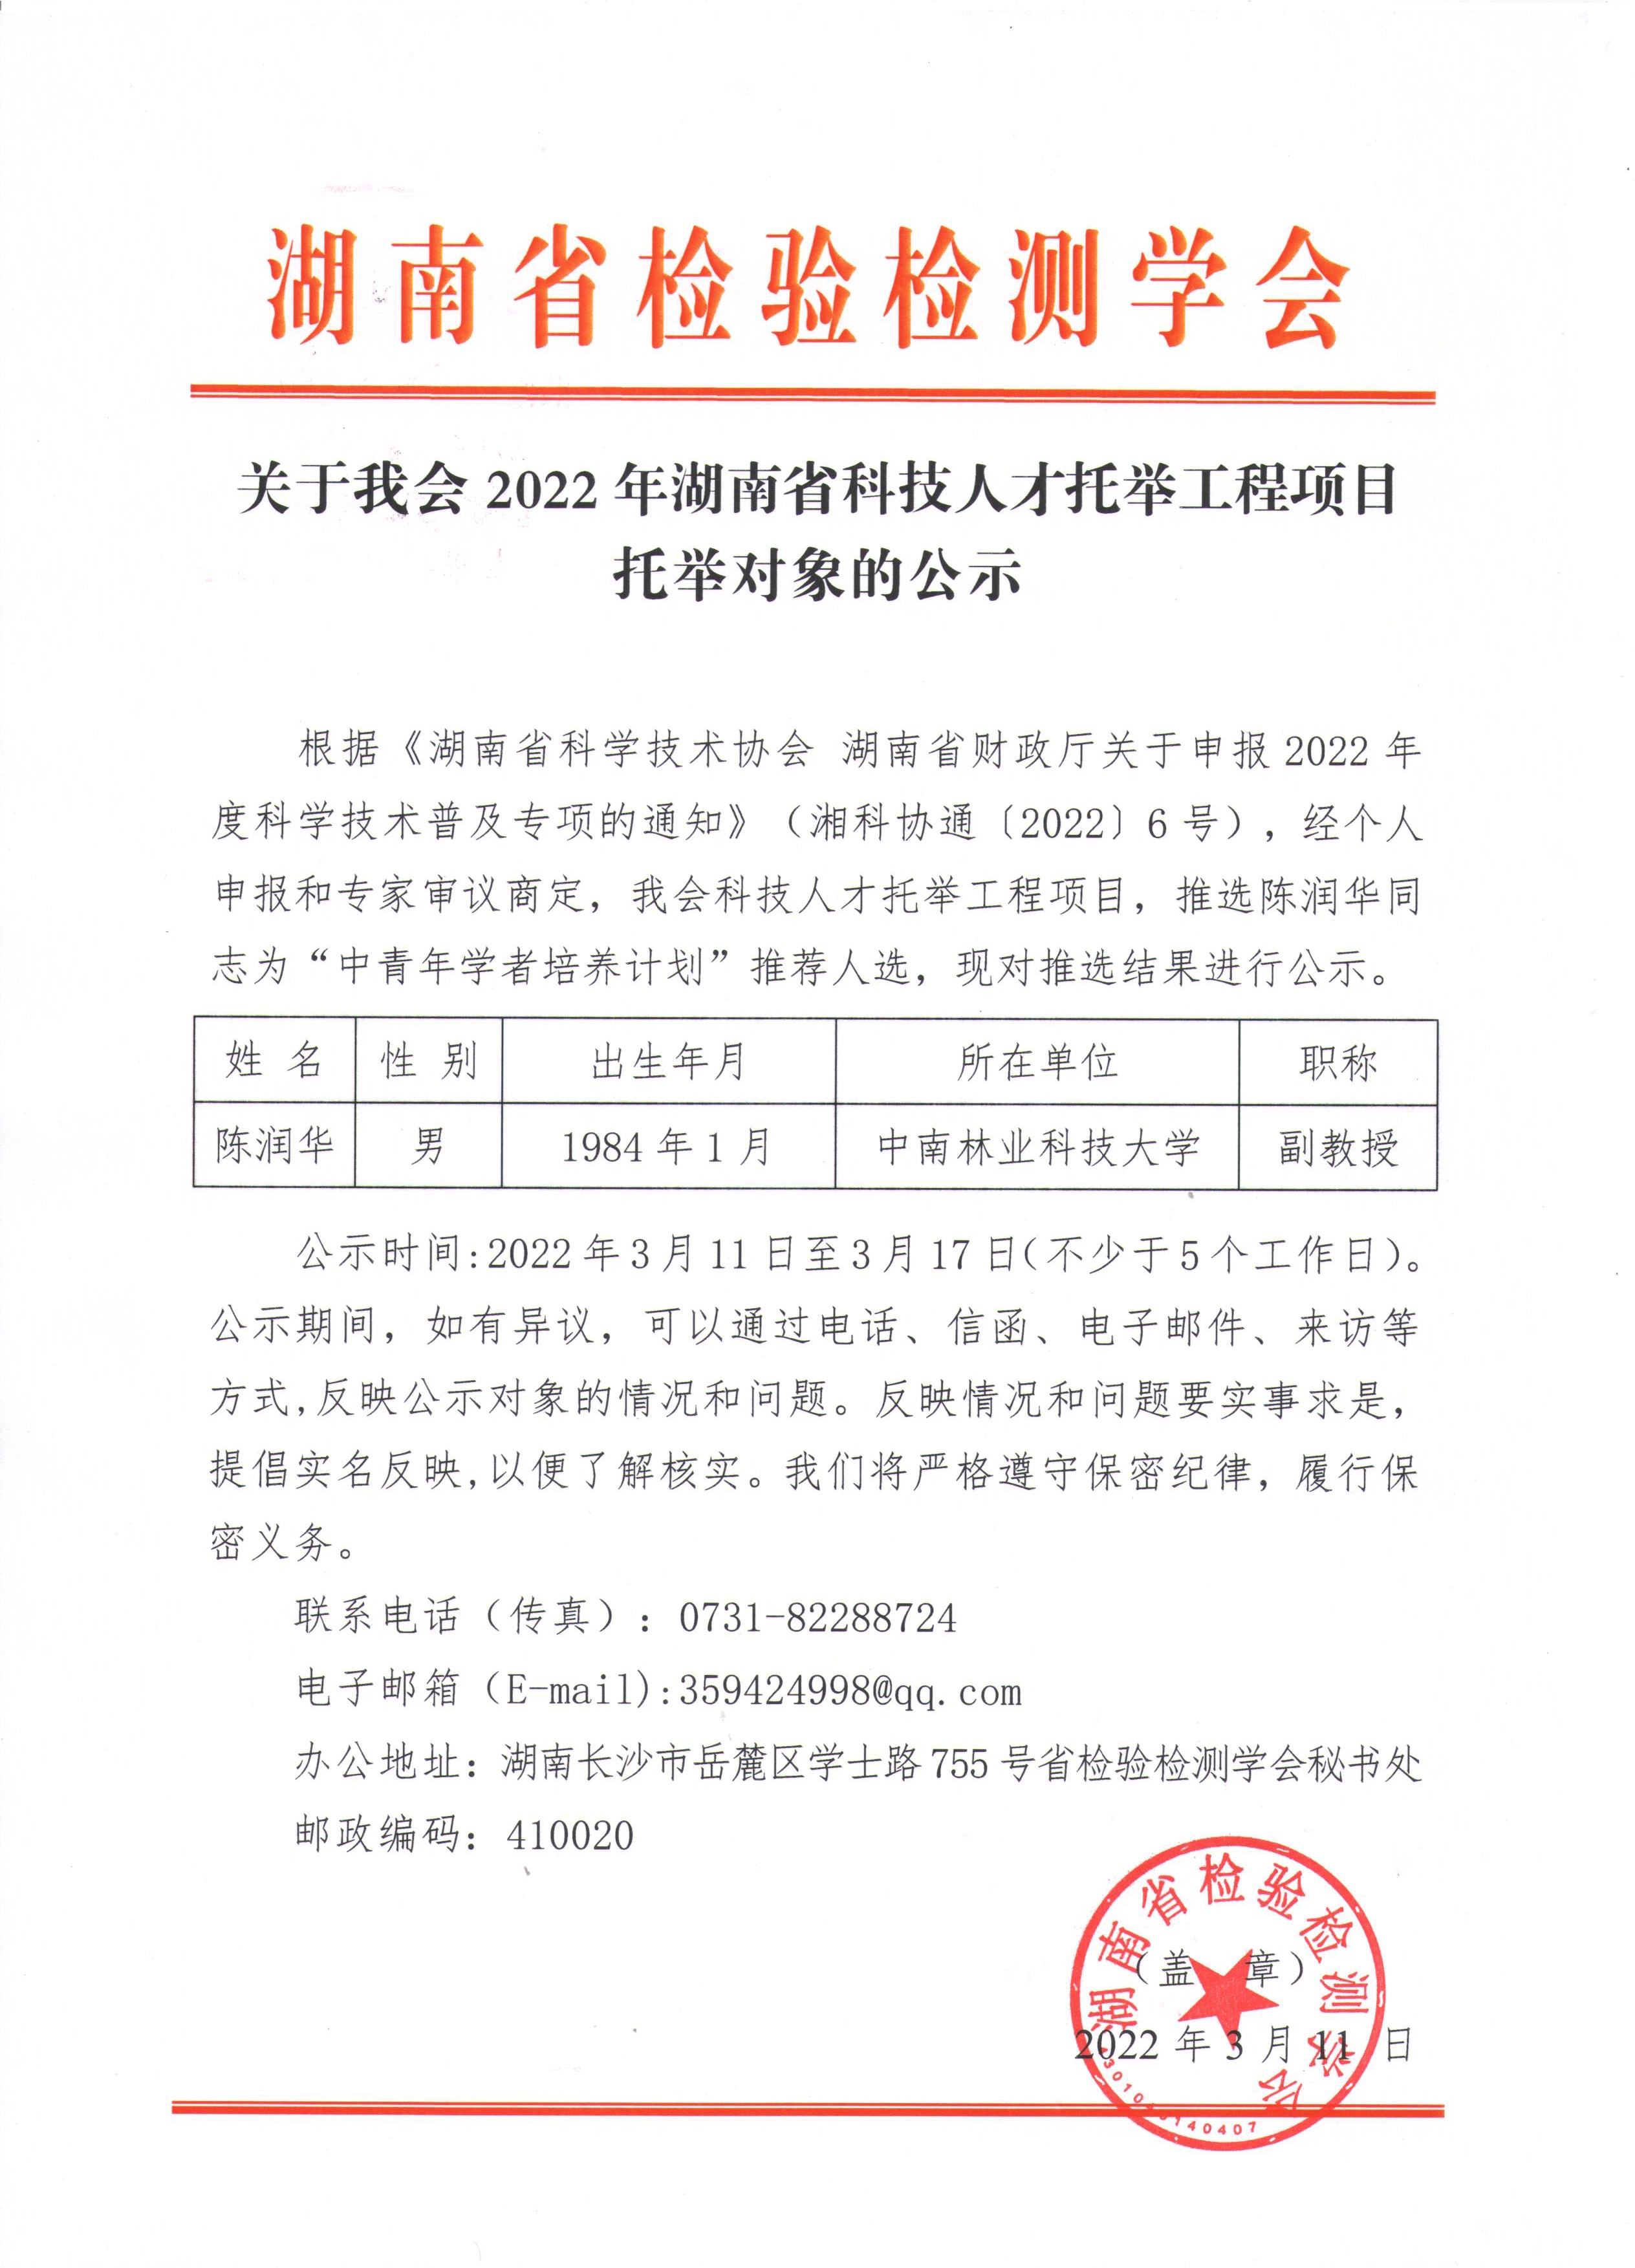 关于我会2022年湖南省科技人才托举工程项目托举对象的公示.jpg